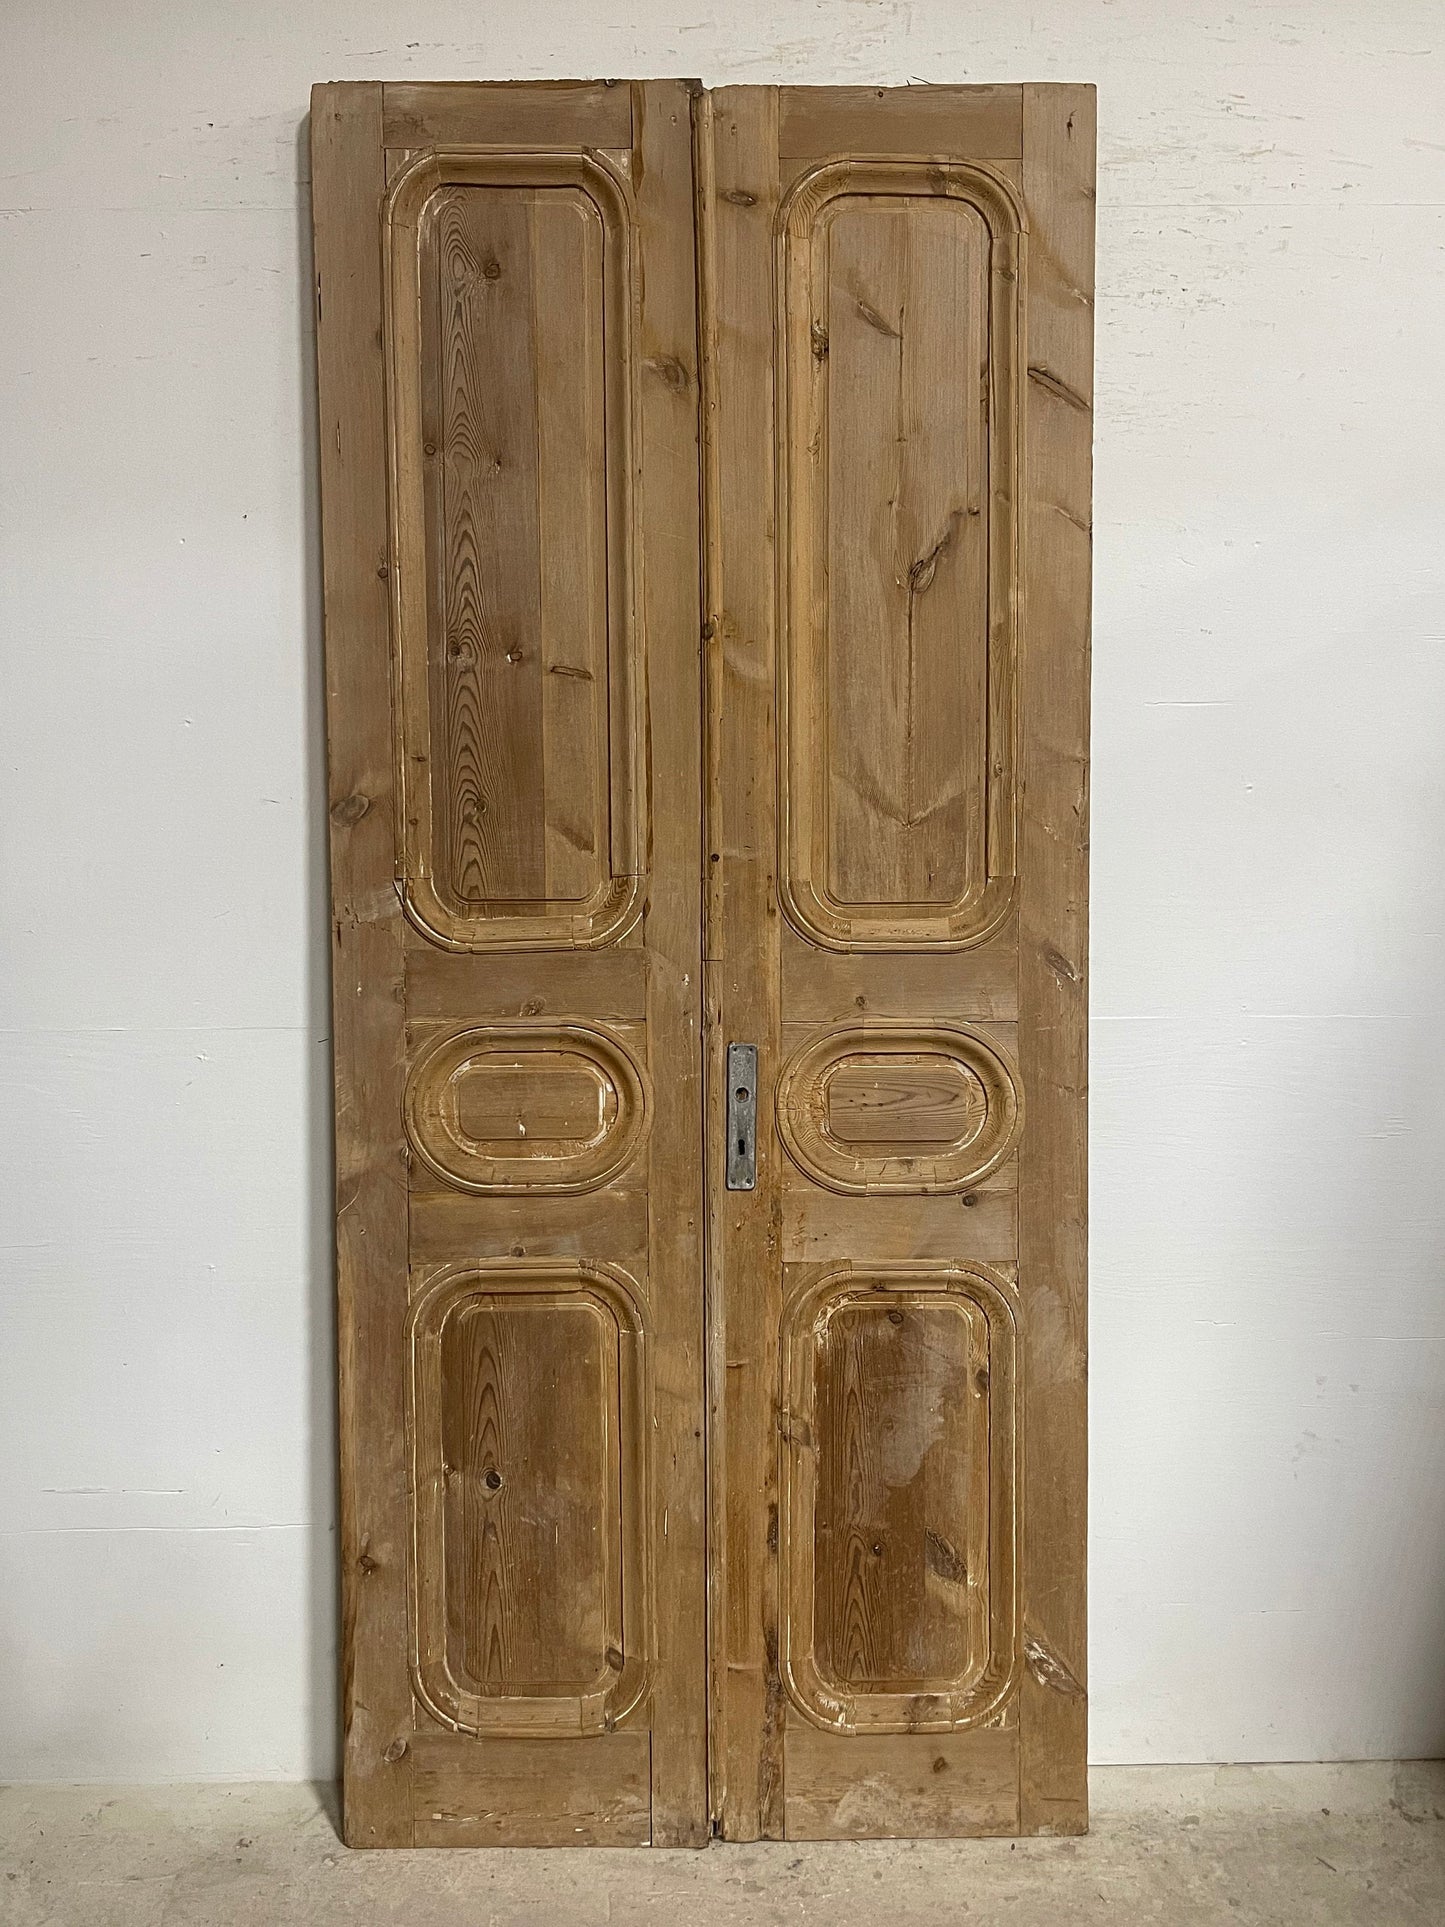 Antique French panel doors (102x44.5